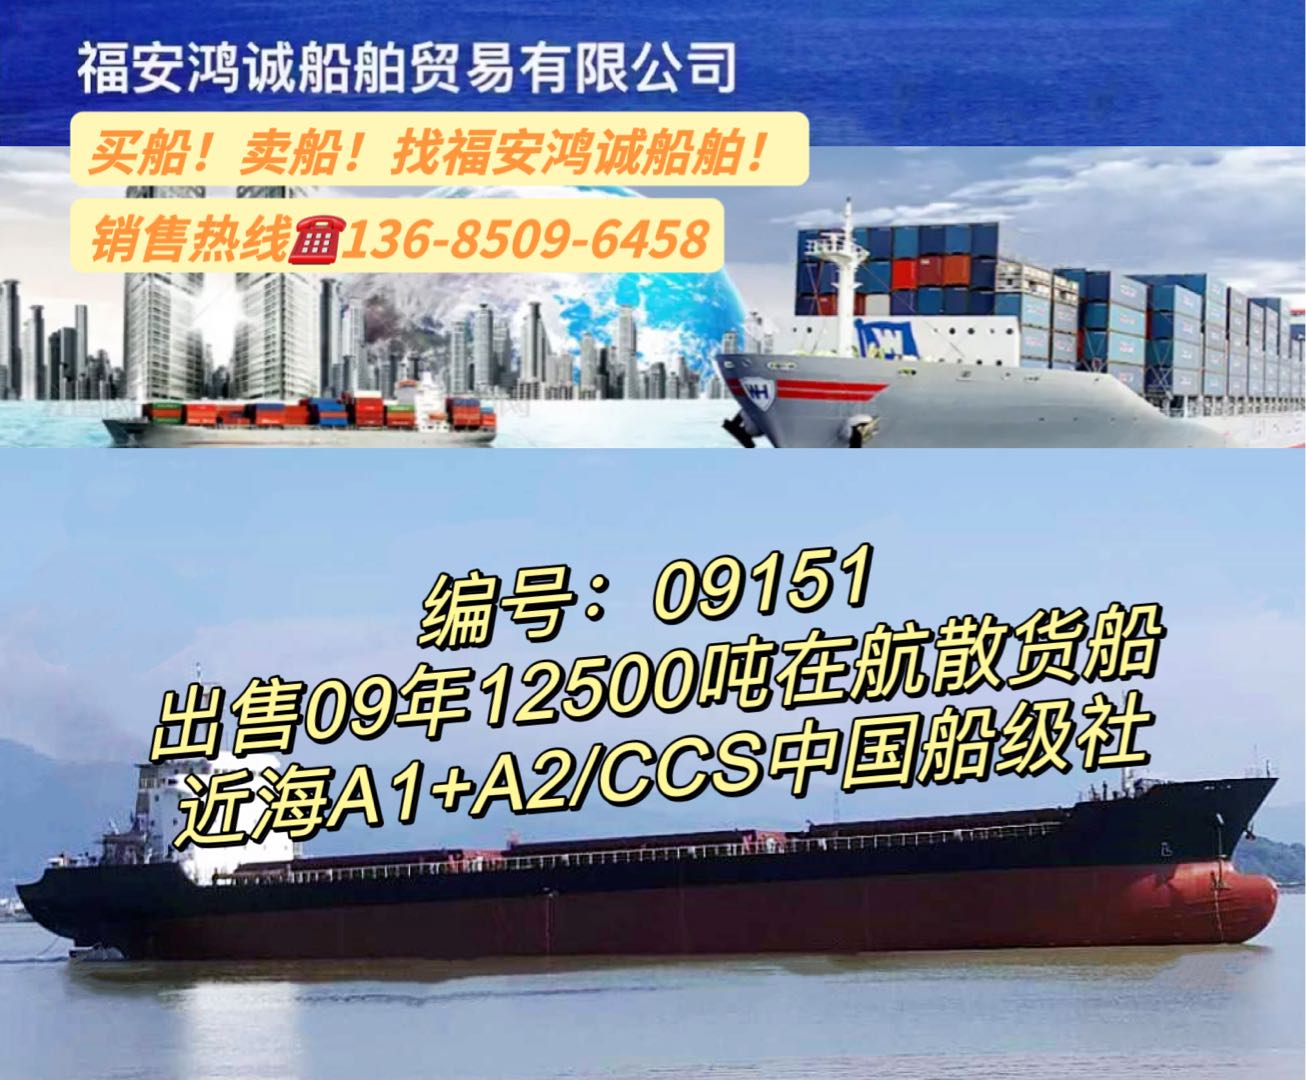 出售09年12500吨在航散货船